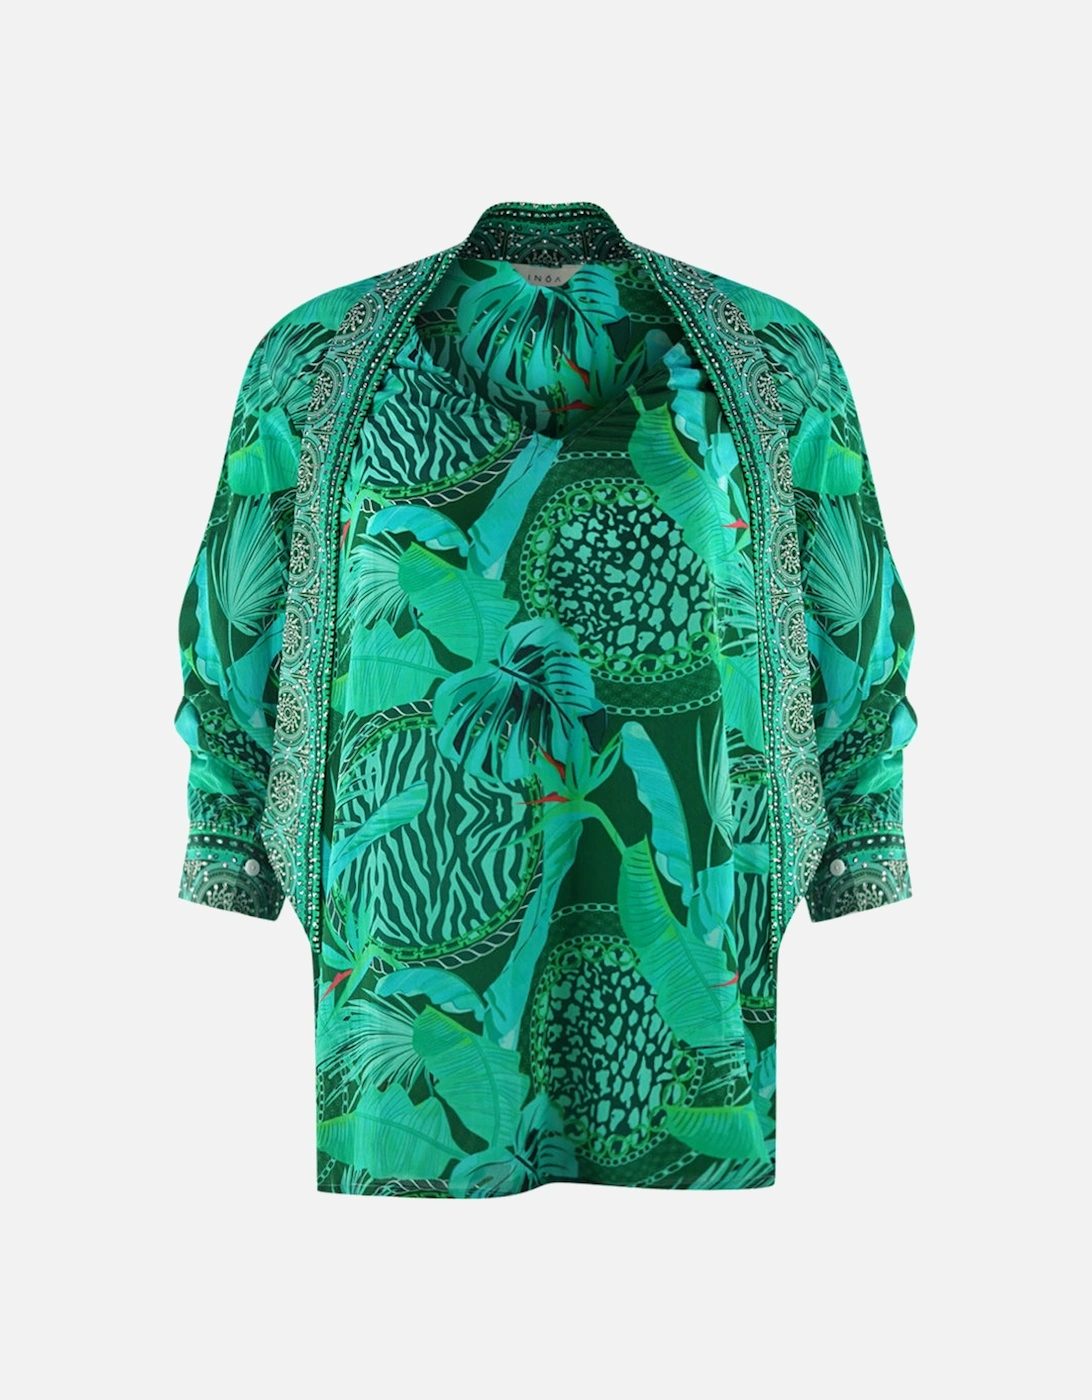 Valdivian Rainforest 1202114 Green Long Sleeve Blouse Silk Shirt, 3 of 2